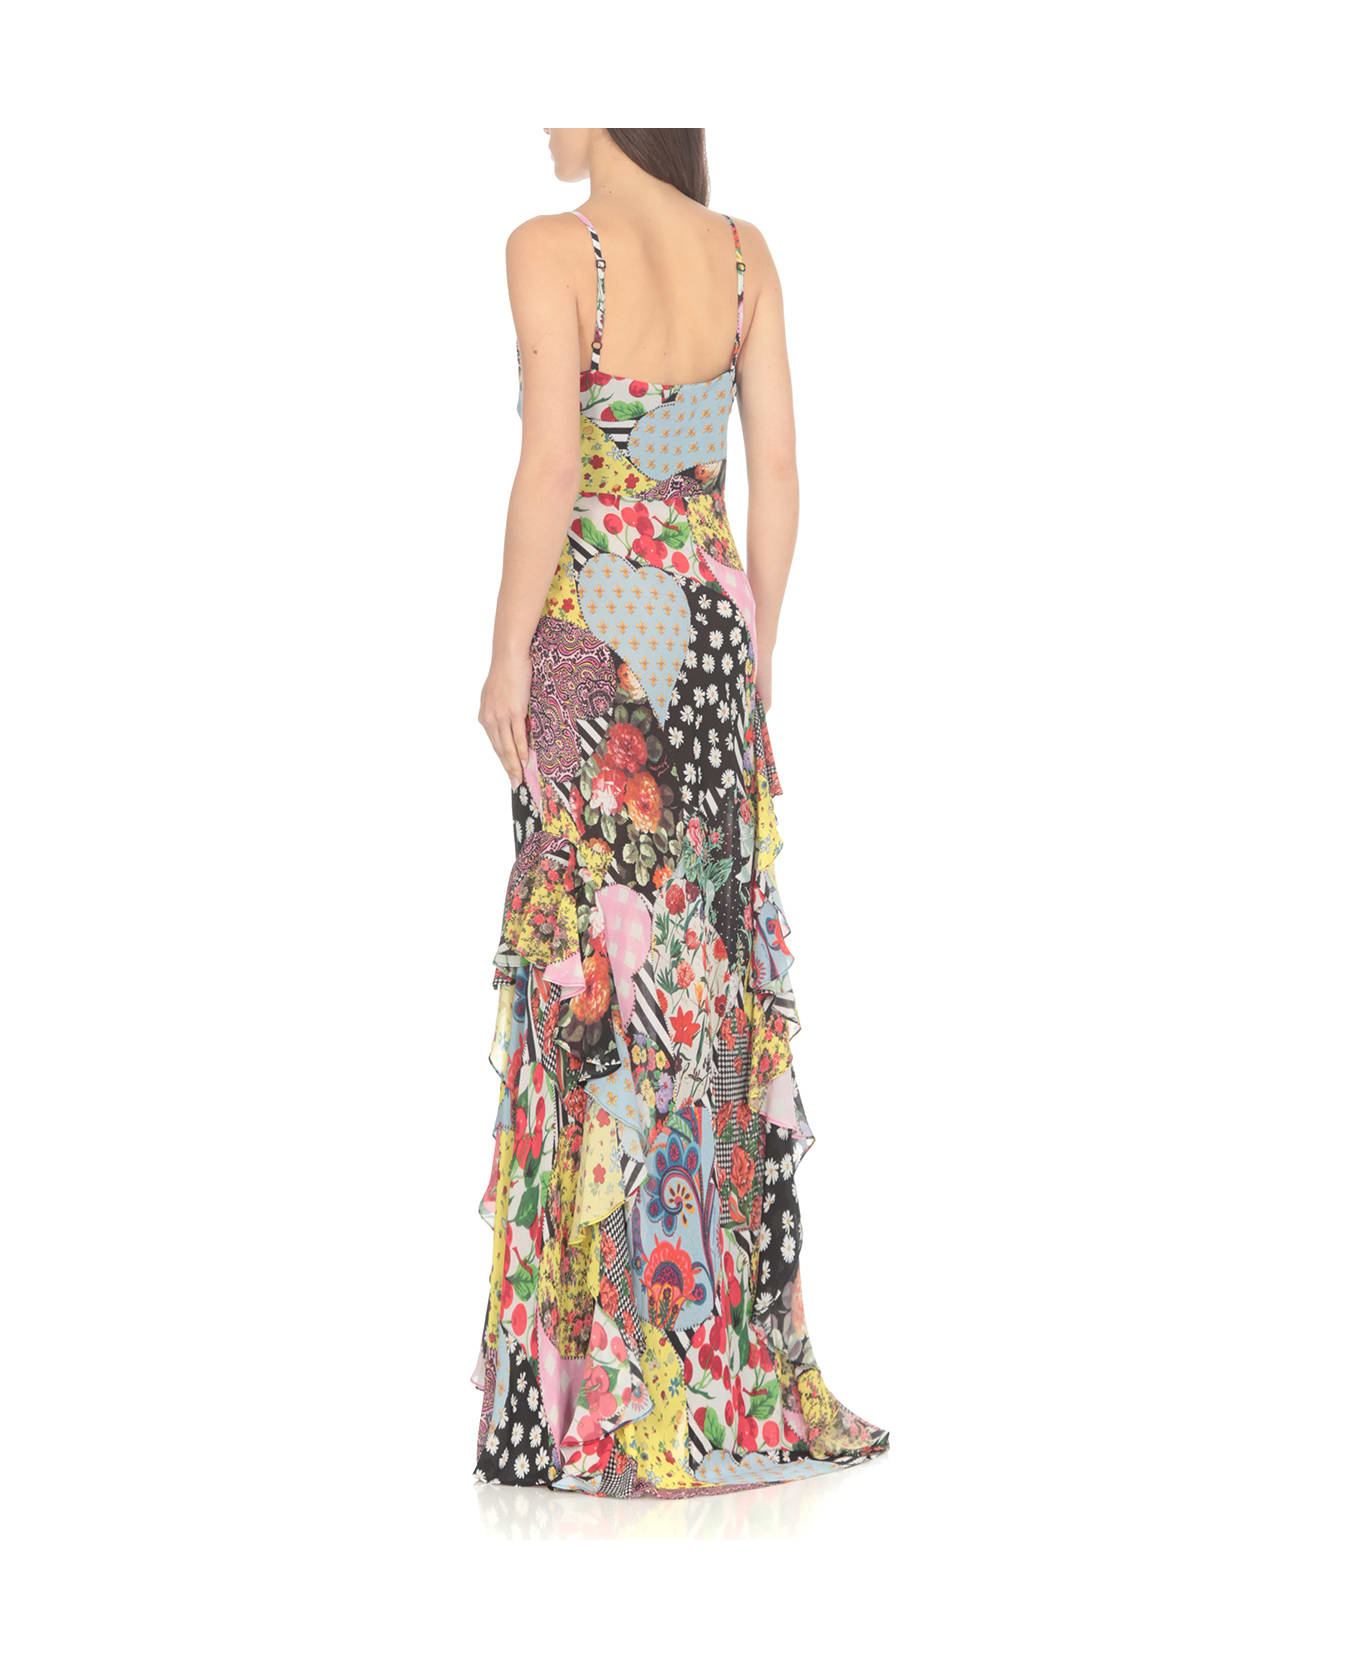 M05CH1N0 Jeans Long Floral Dress - Multicolor